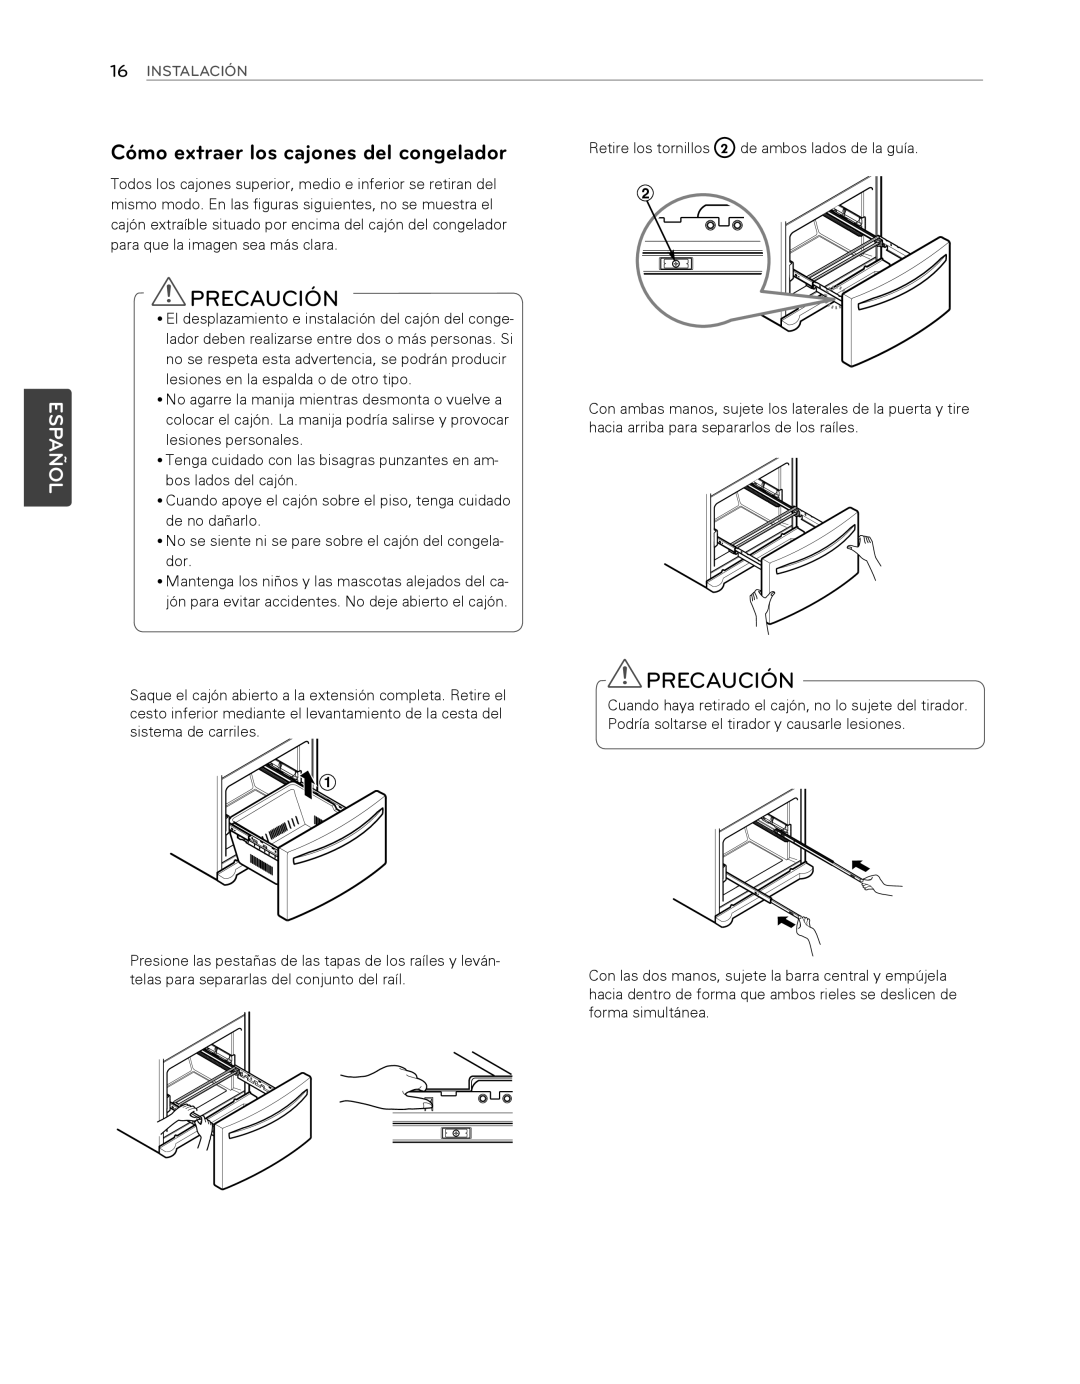 LG Electronics LFX25974SB, LFX25974ST Precaución, Cómo extraer los cajones del congelador, Español, 16INSTALACIÓN 